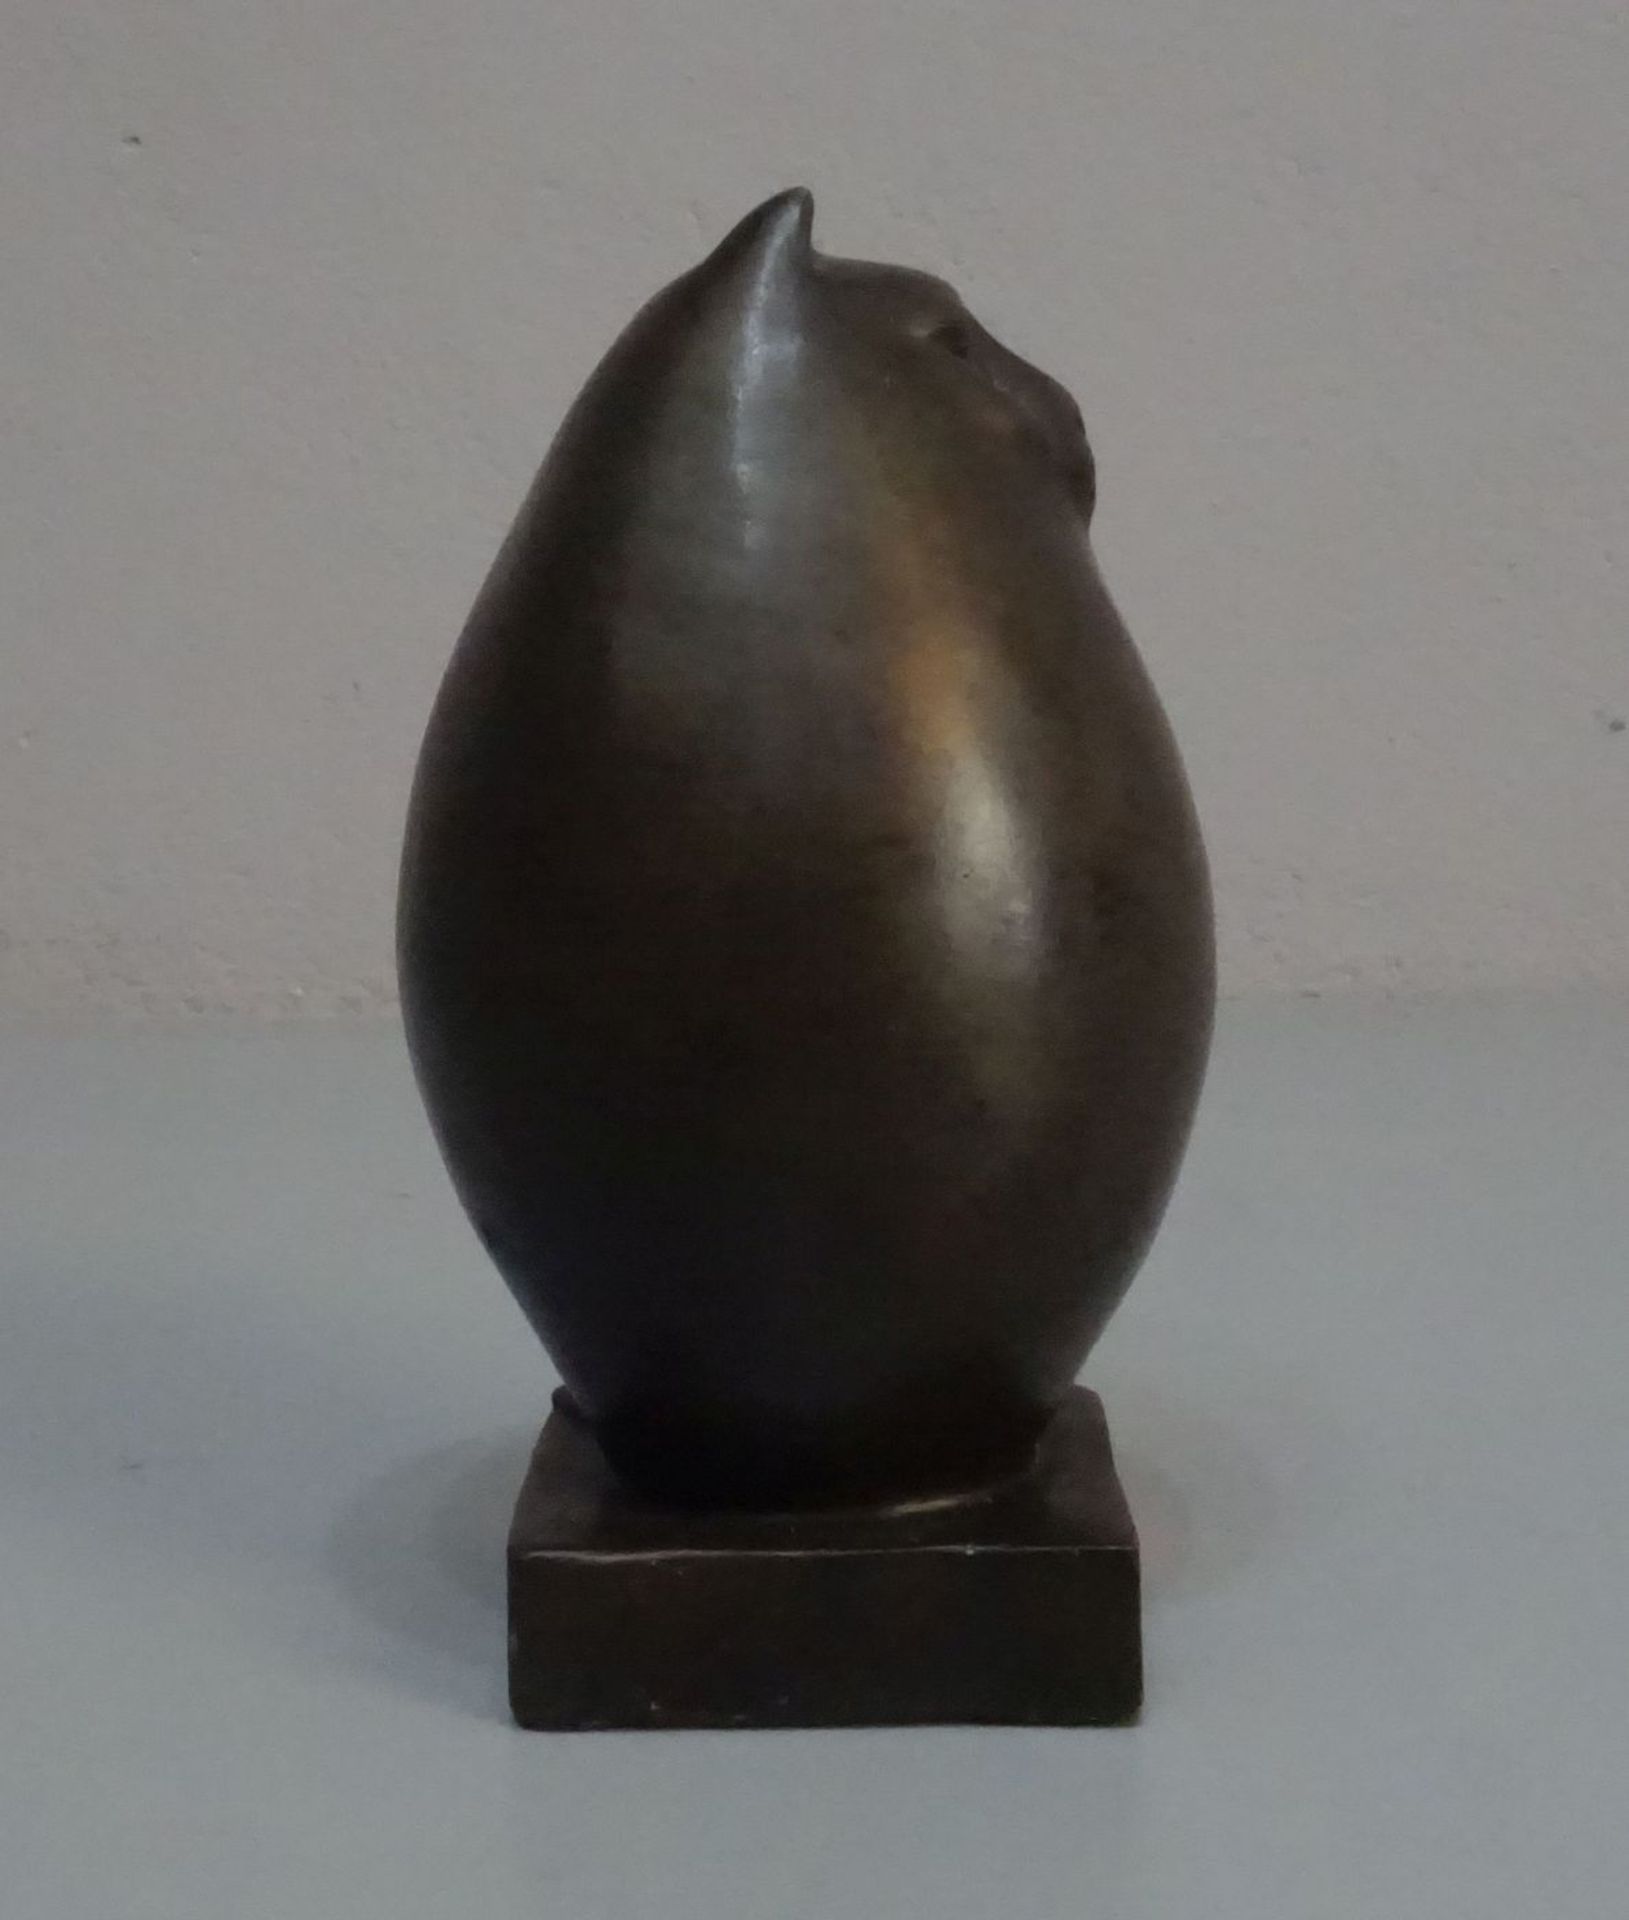 LOPEZ, MIGUEL FERNANDO (auch "Milo", geb. 1955 in Lissabon), Skulptur / sculpture: "Katze", - Bild 4 aus 5